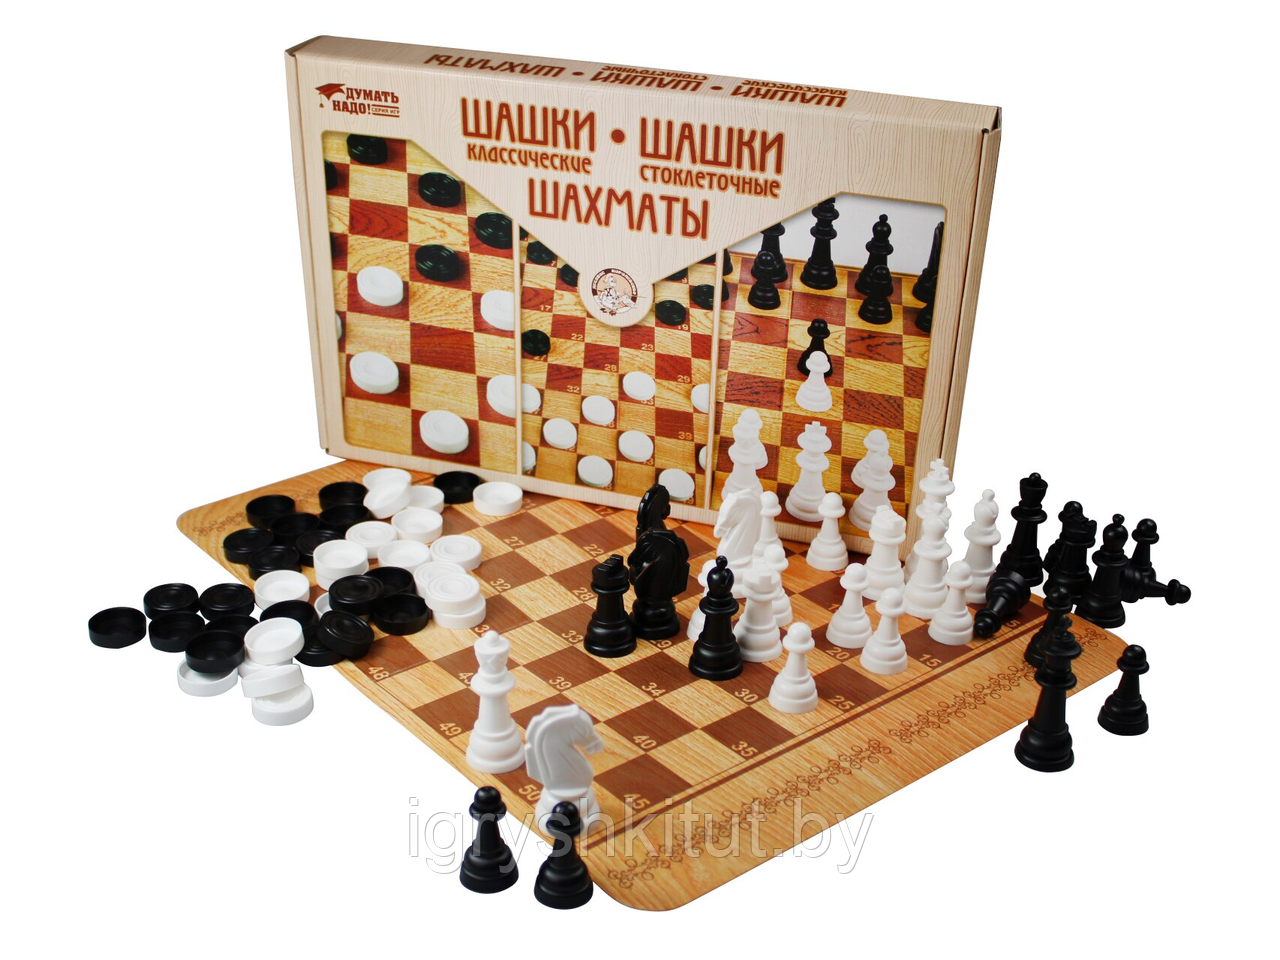 Игра настольная "Шашки классические, шашки стоклеточные, шахматы"